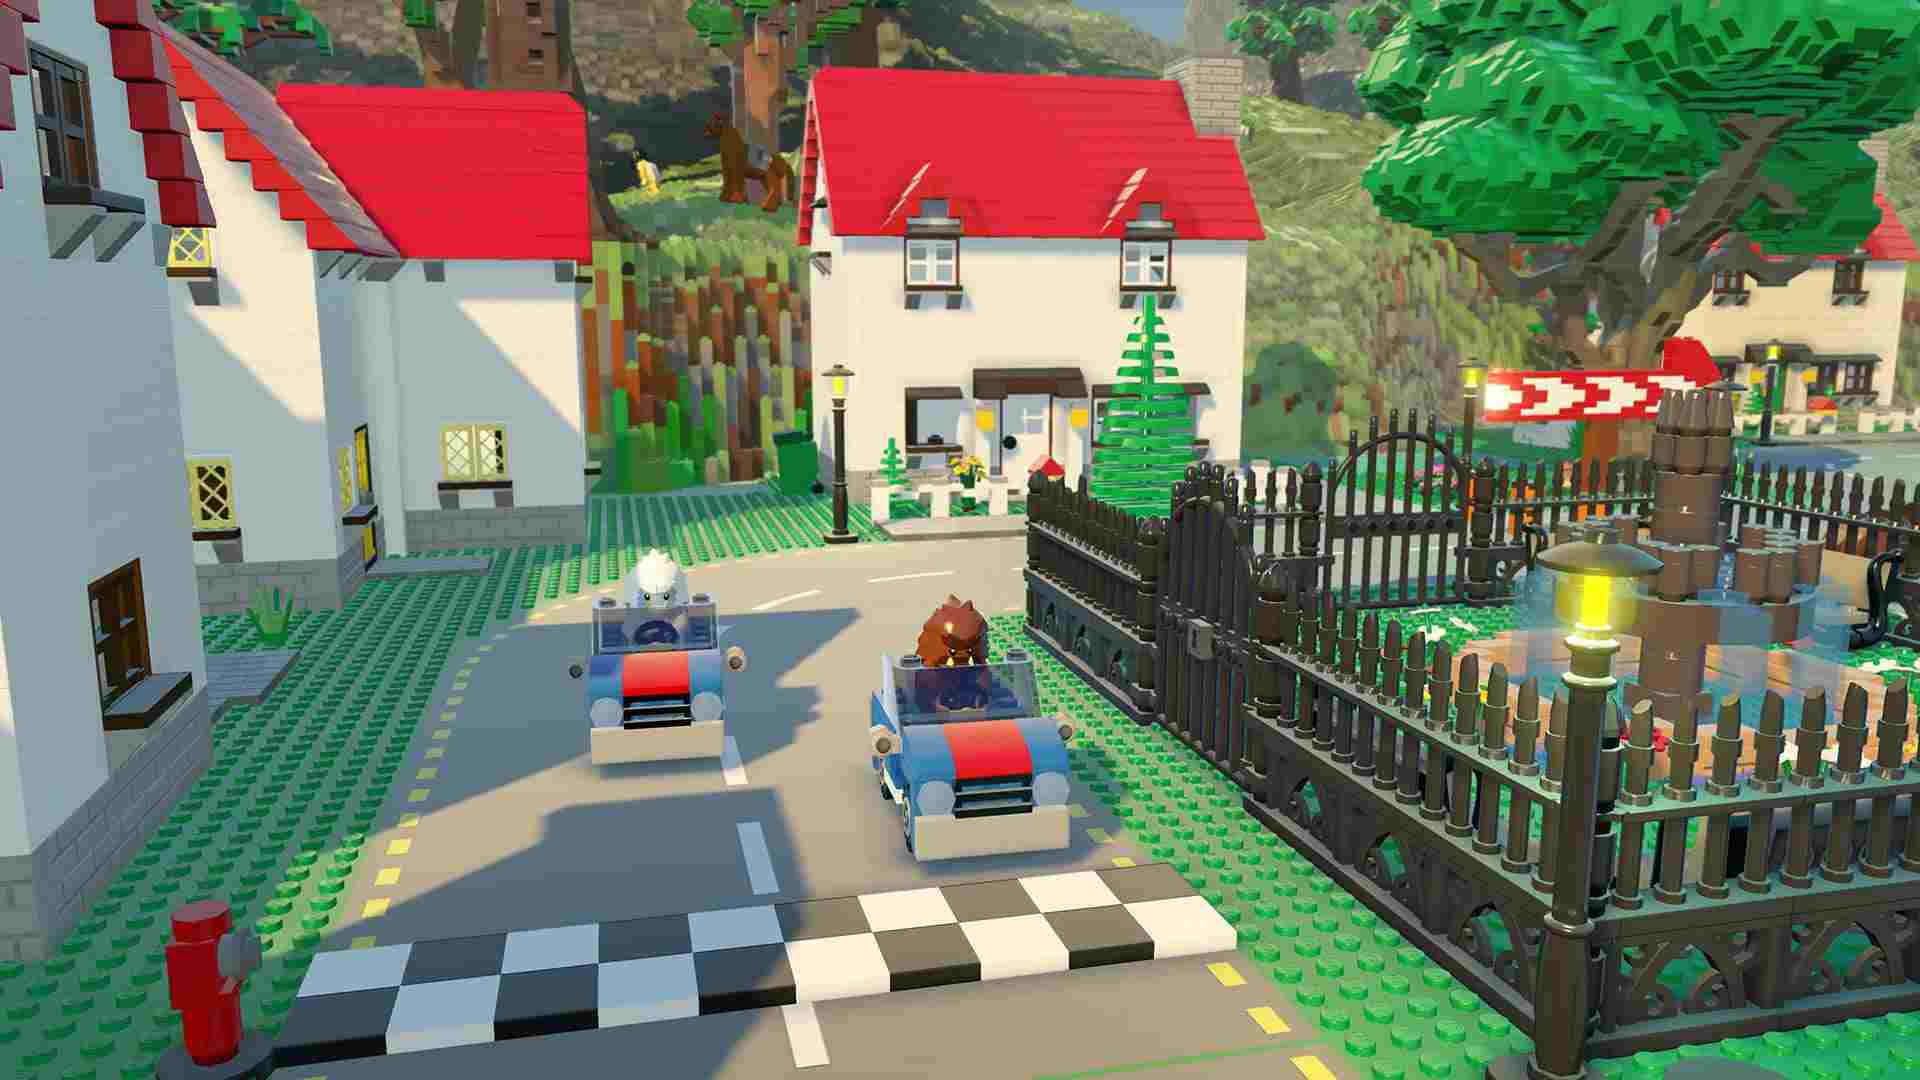 بازی LEGO Worlds برای PC